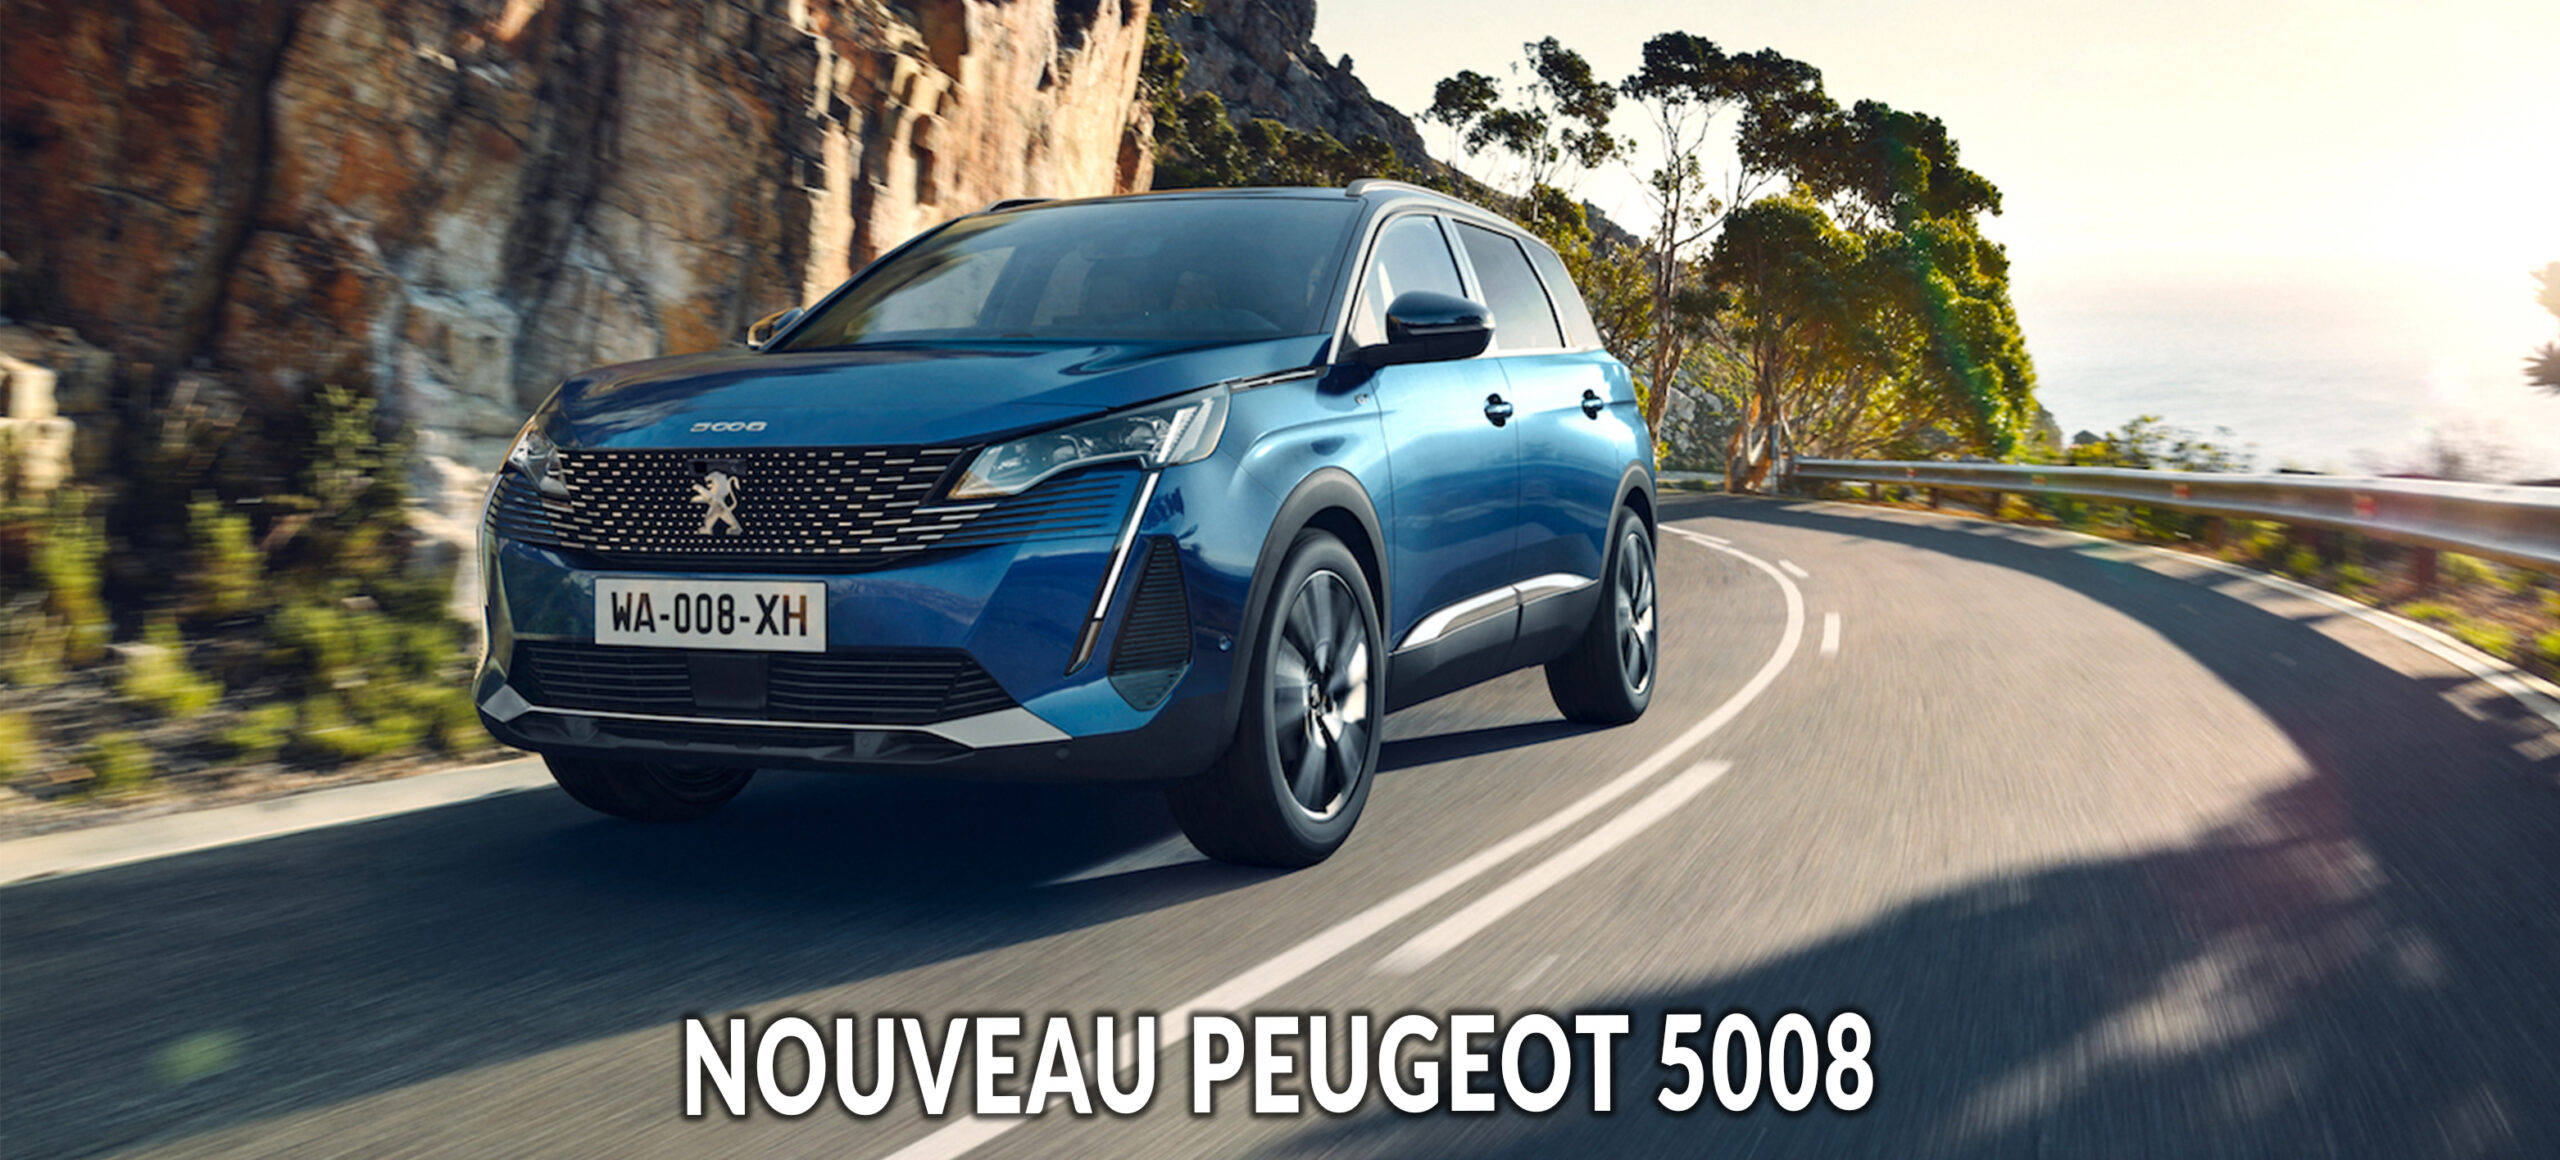 Après le 3008, révélation du Peugeot 5008 2020